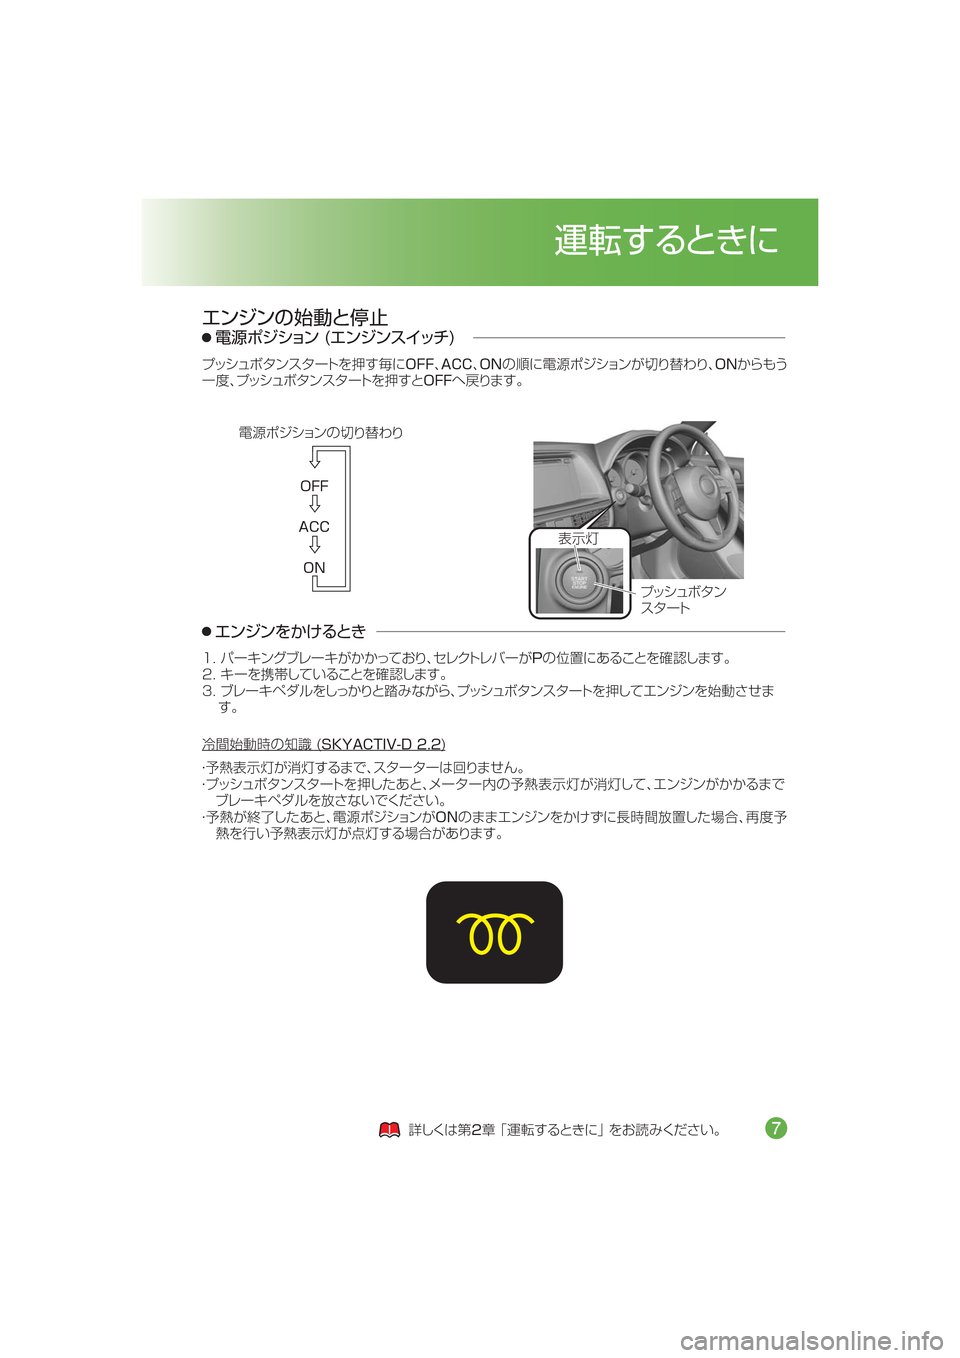 MAZDA MODEL CX-5 2015  取扱説明書 (in Japanese) �0��
�"�$�$
�0�/
?o